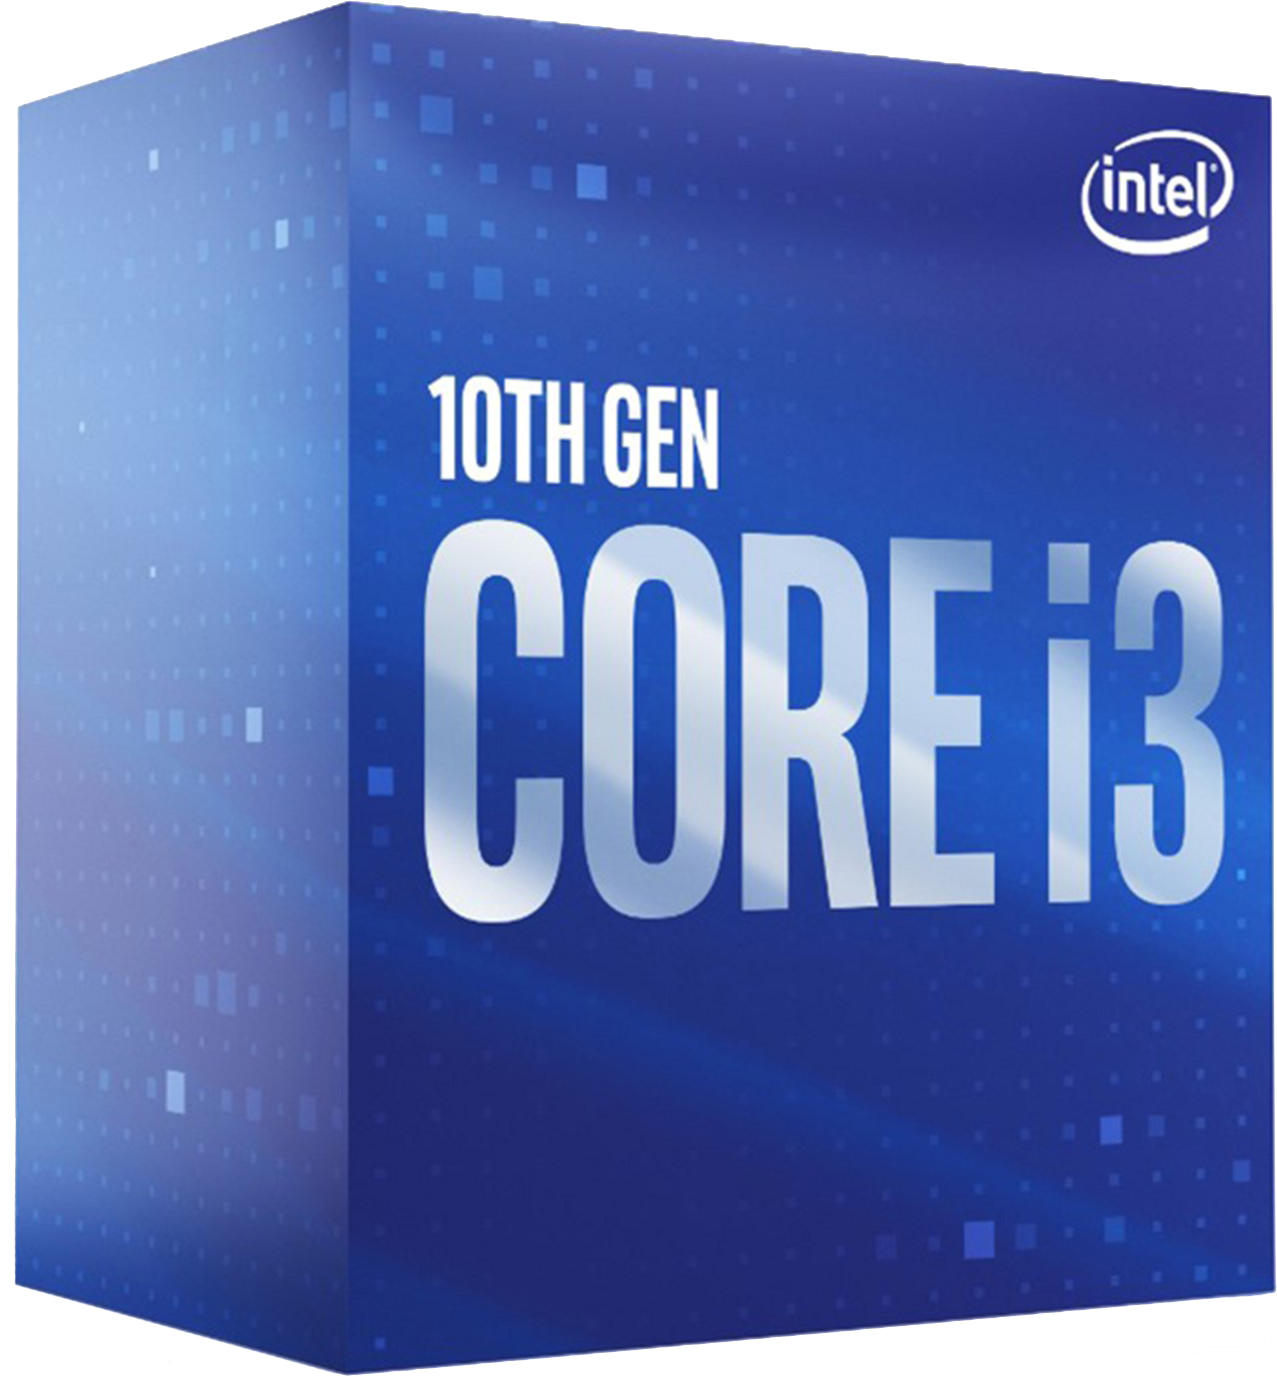 Процесор Intel Core i3-10100F 3.6 GHz / 6 MB  s1200 BOX